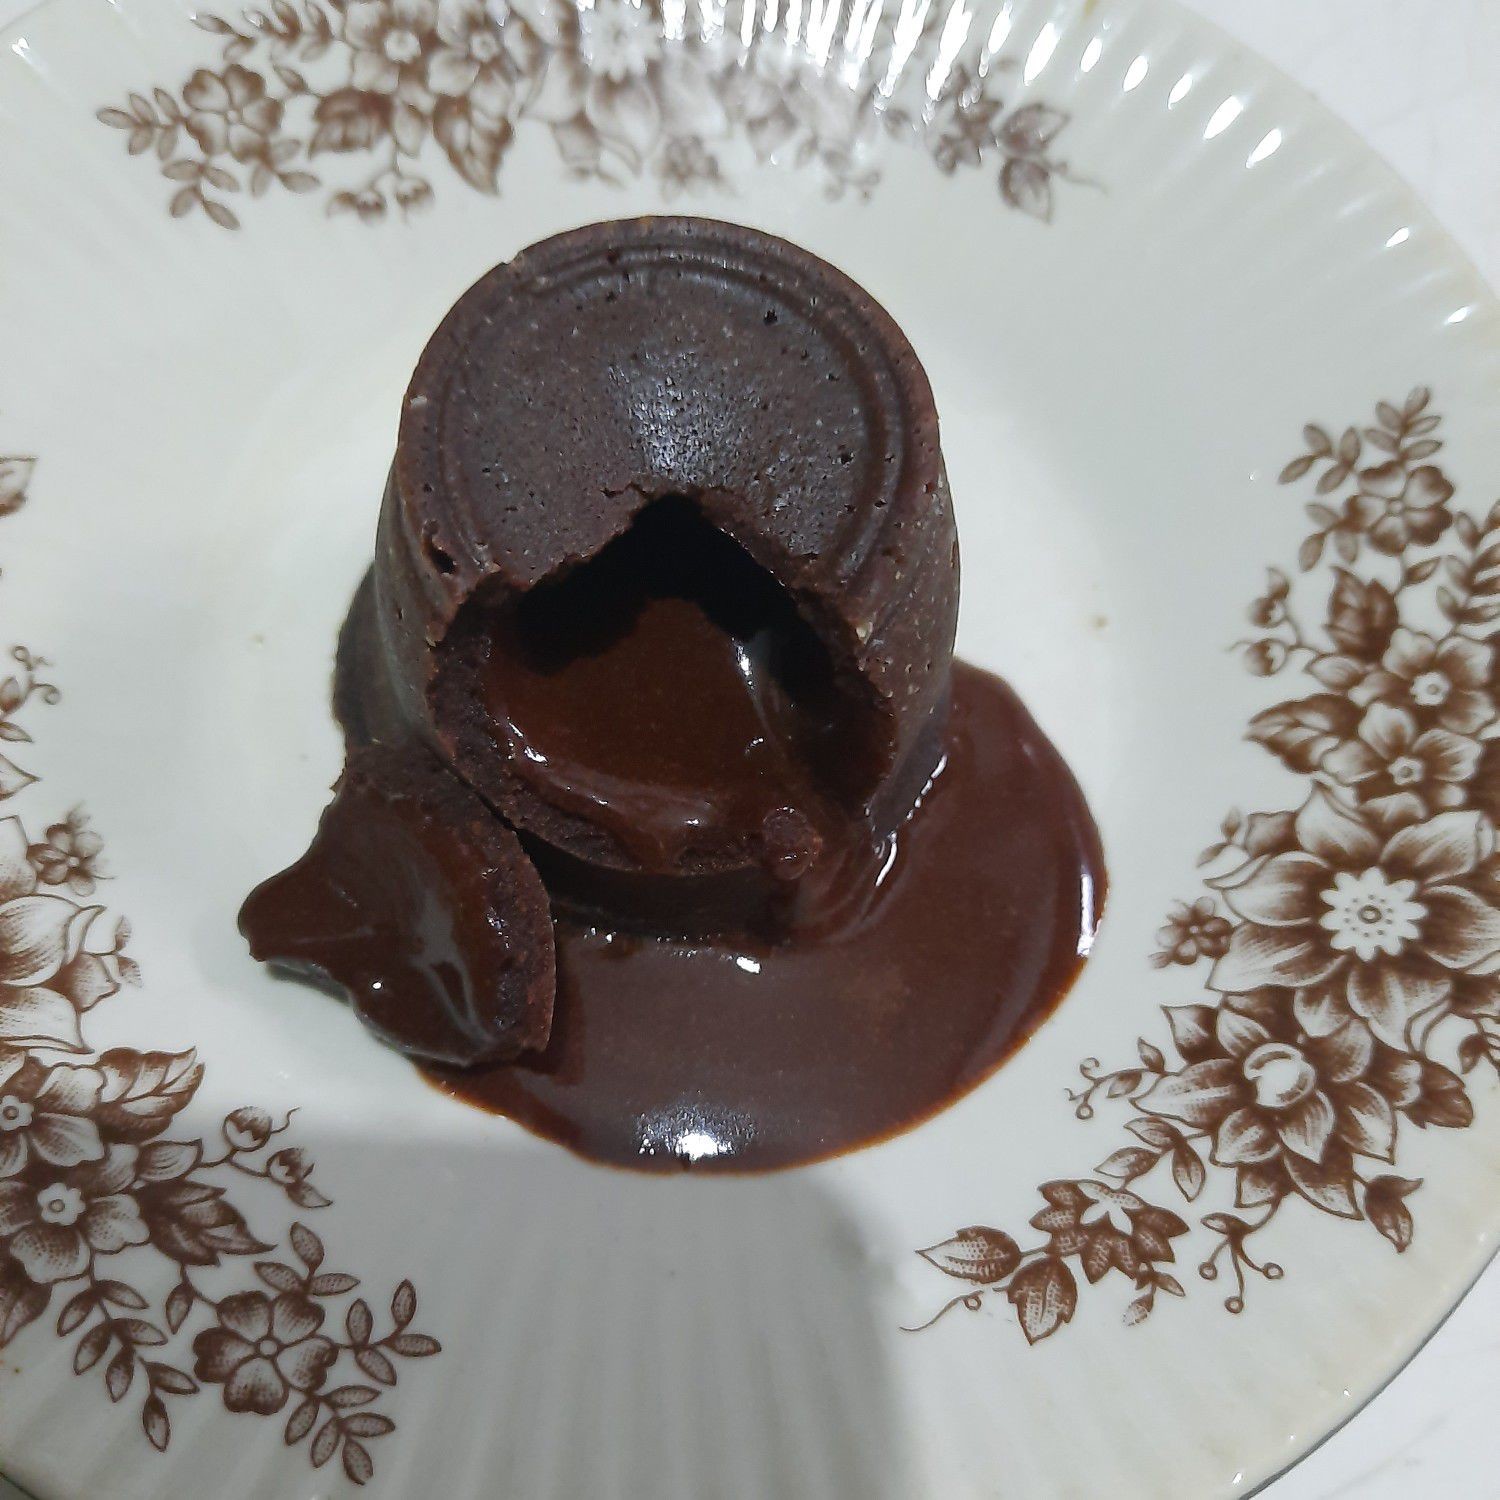 Resep Choco Lava Cake Sederhana Rumahan di Yummy App